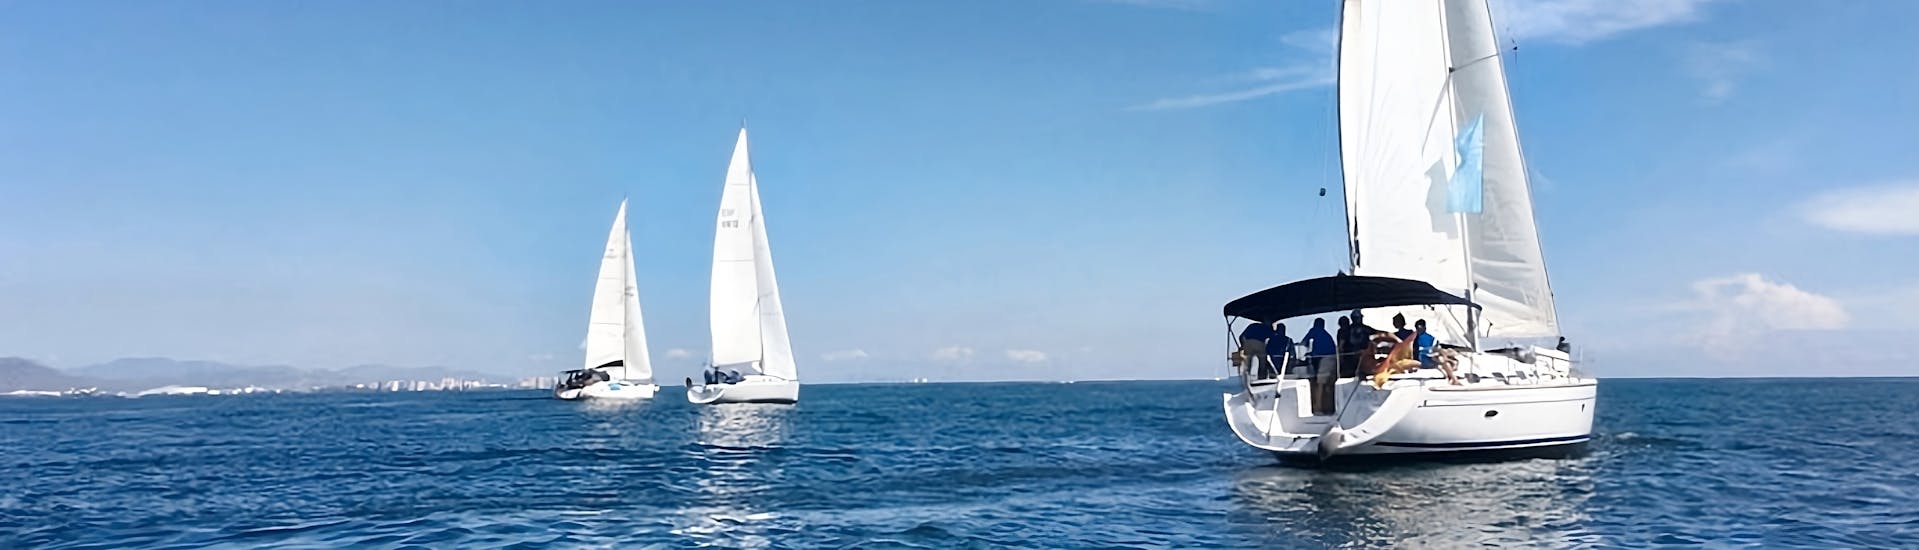 Private Segeltour entlang der Küste von Valencia